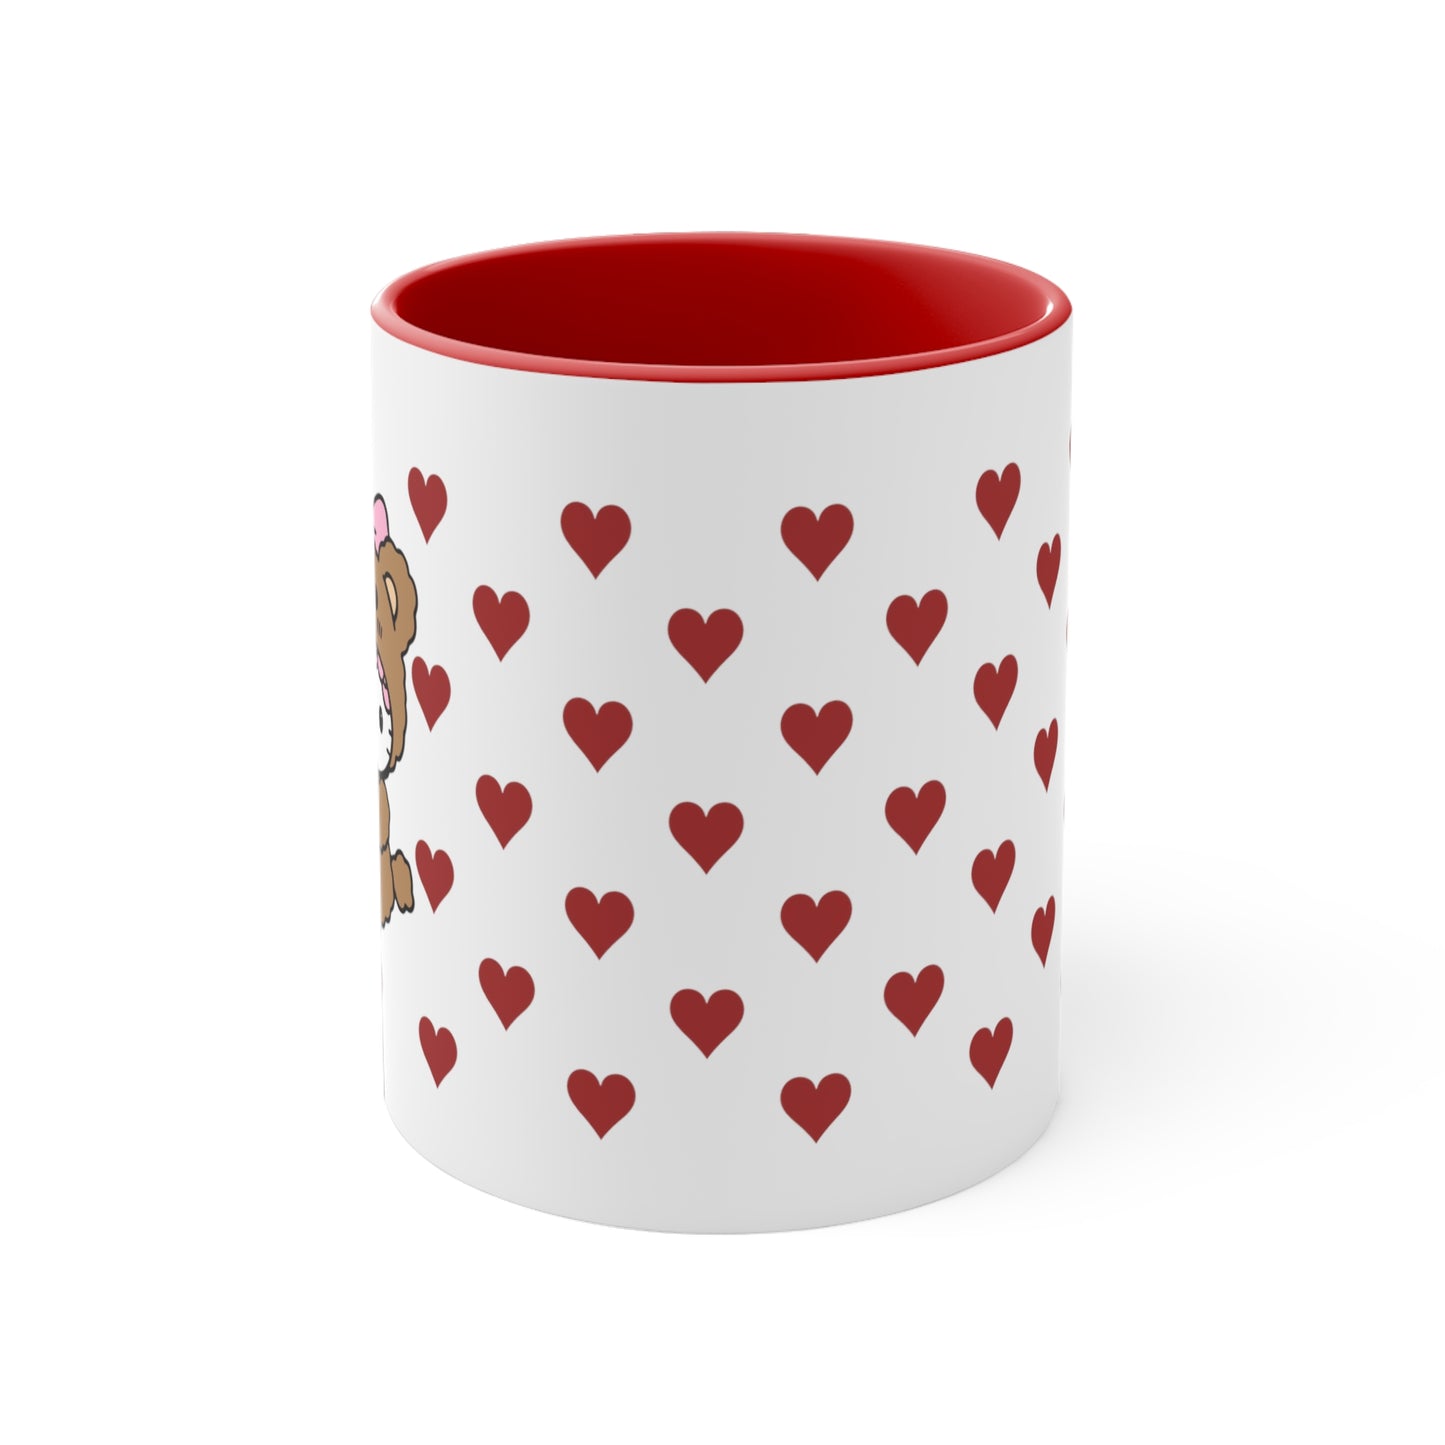 Hello Kitty Bear of Hearts Mug (Red Interior)